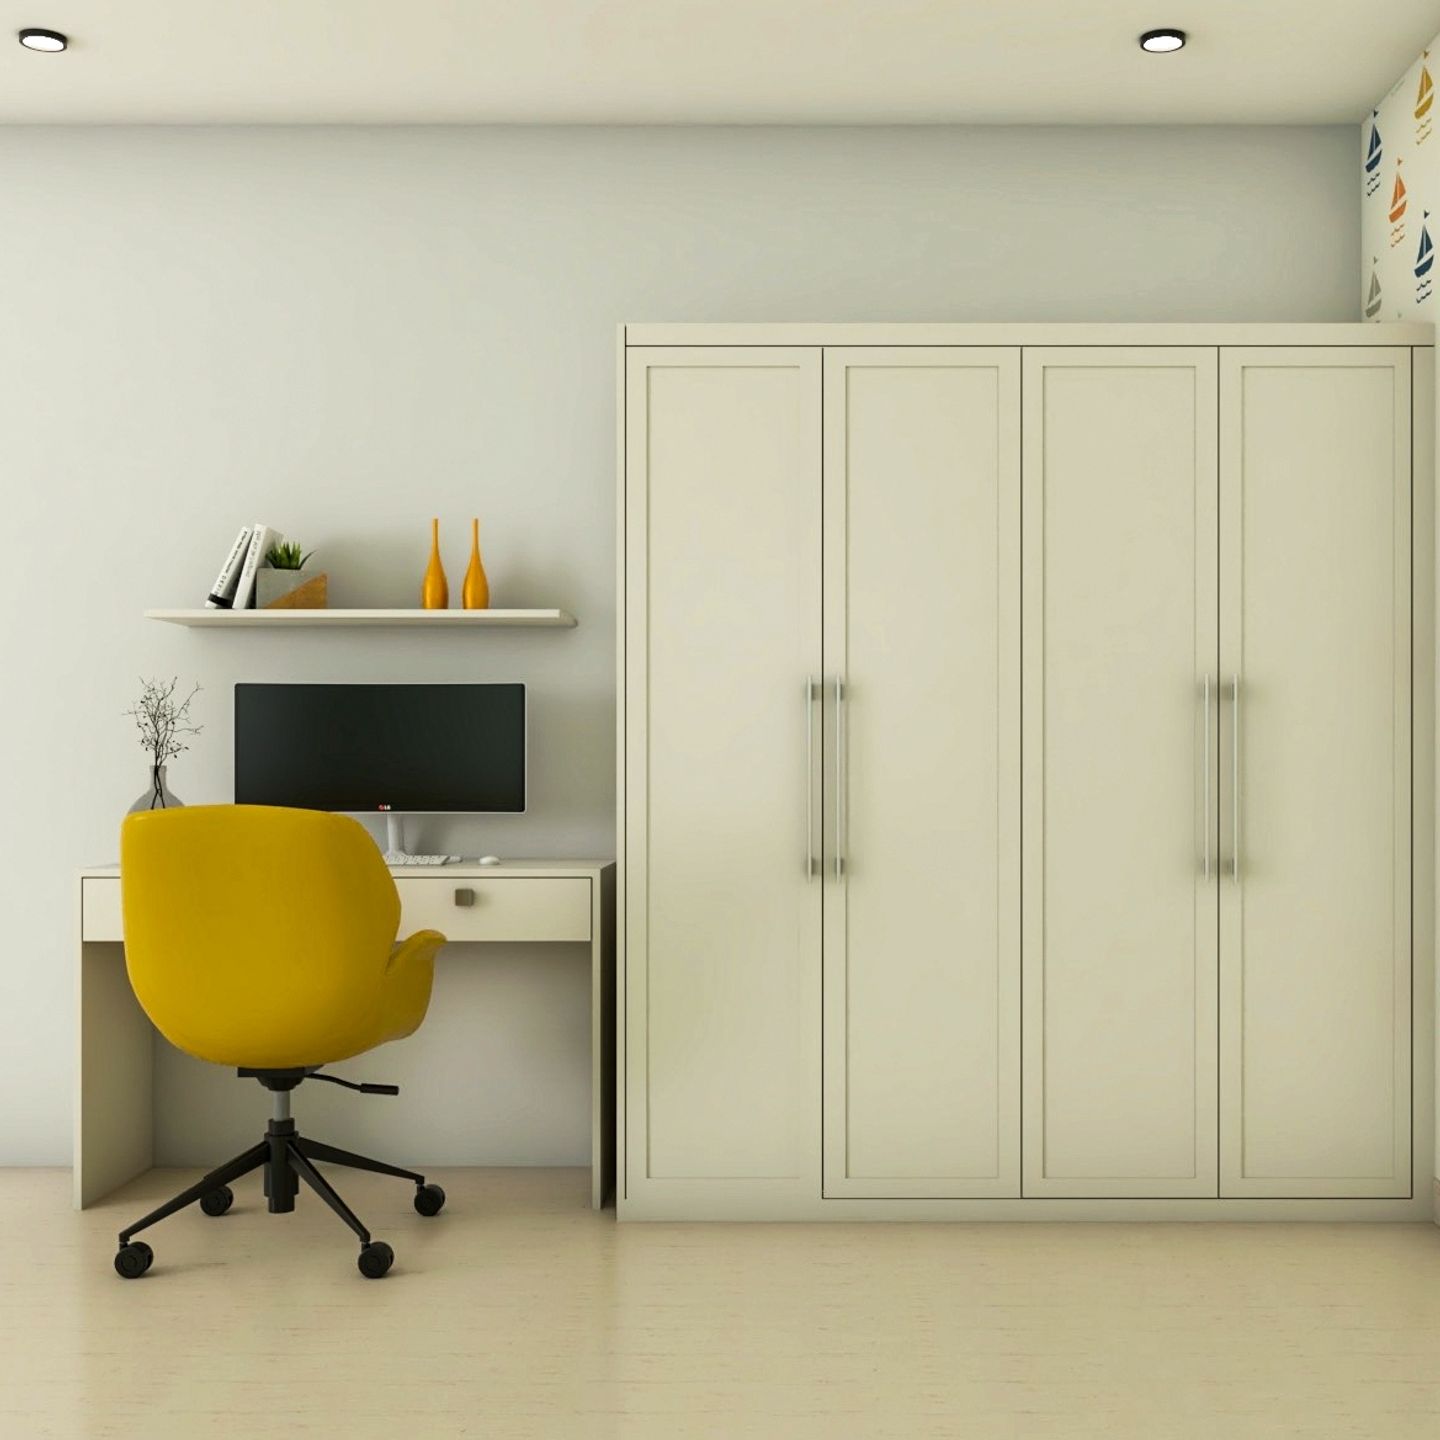 Home Office Interior Design With Beige 4-Door Wardrobe - Livspace